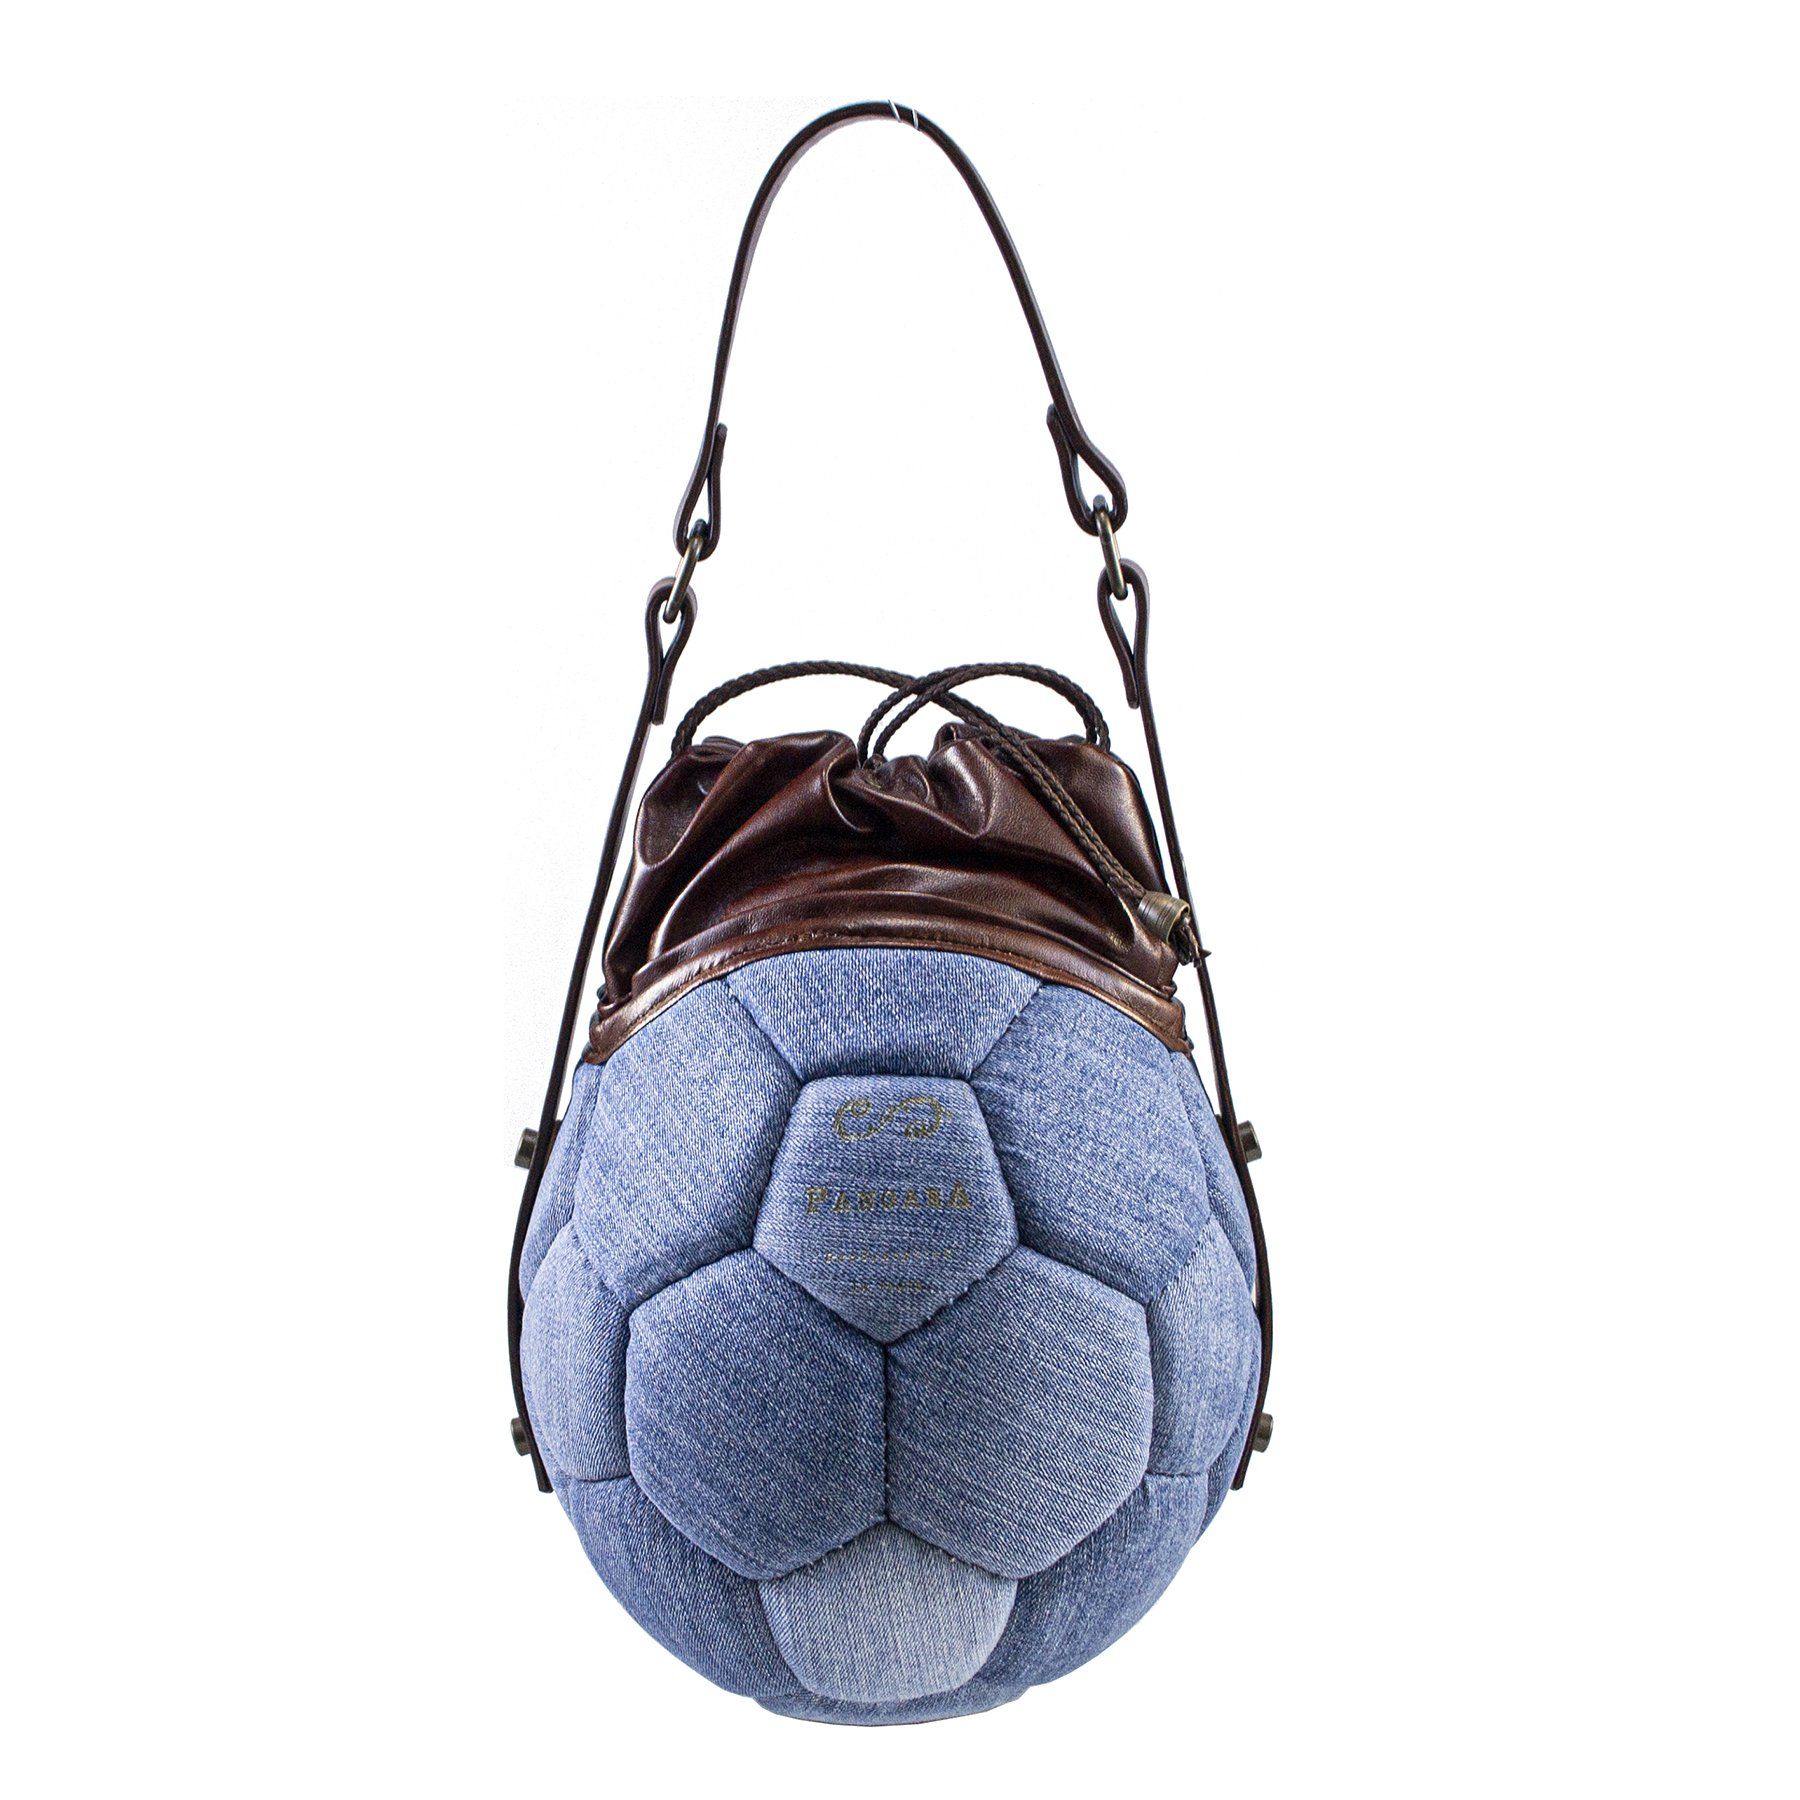 pangaea borsa tonda ricavata dal riciclo di palloni da calcio e jeans componibile ecosostenibile beige davanti